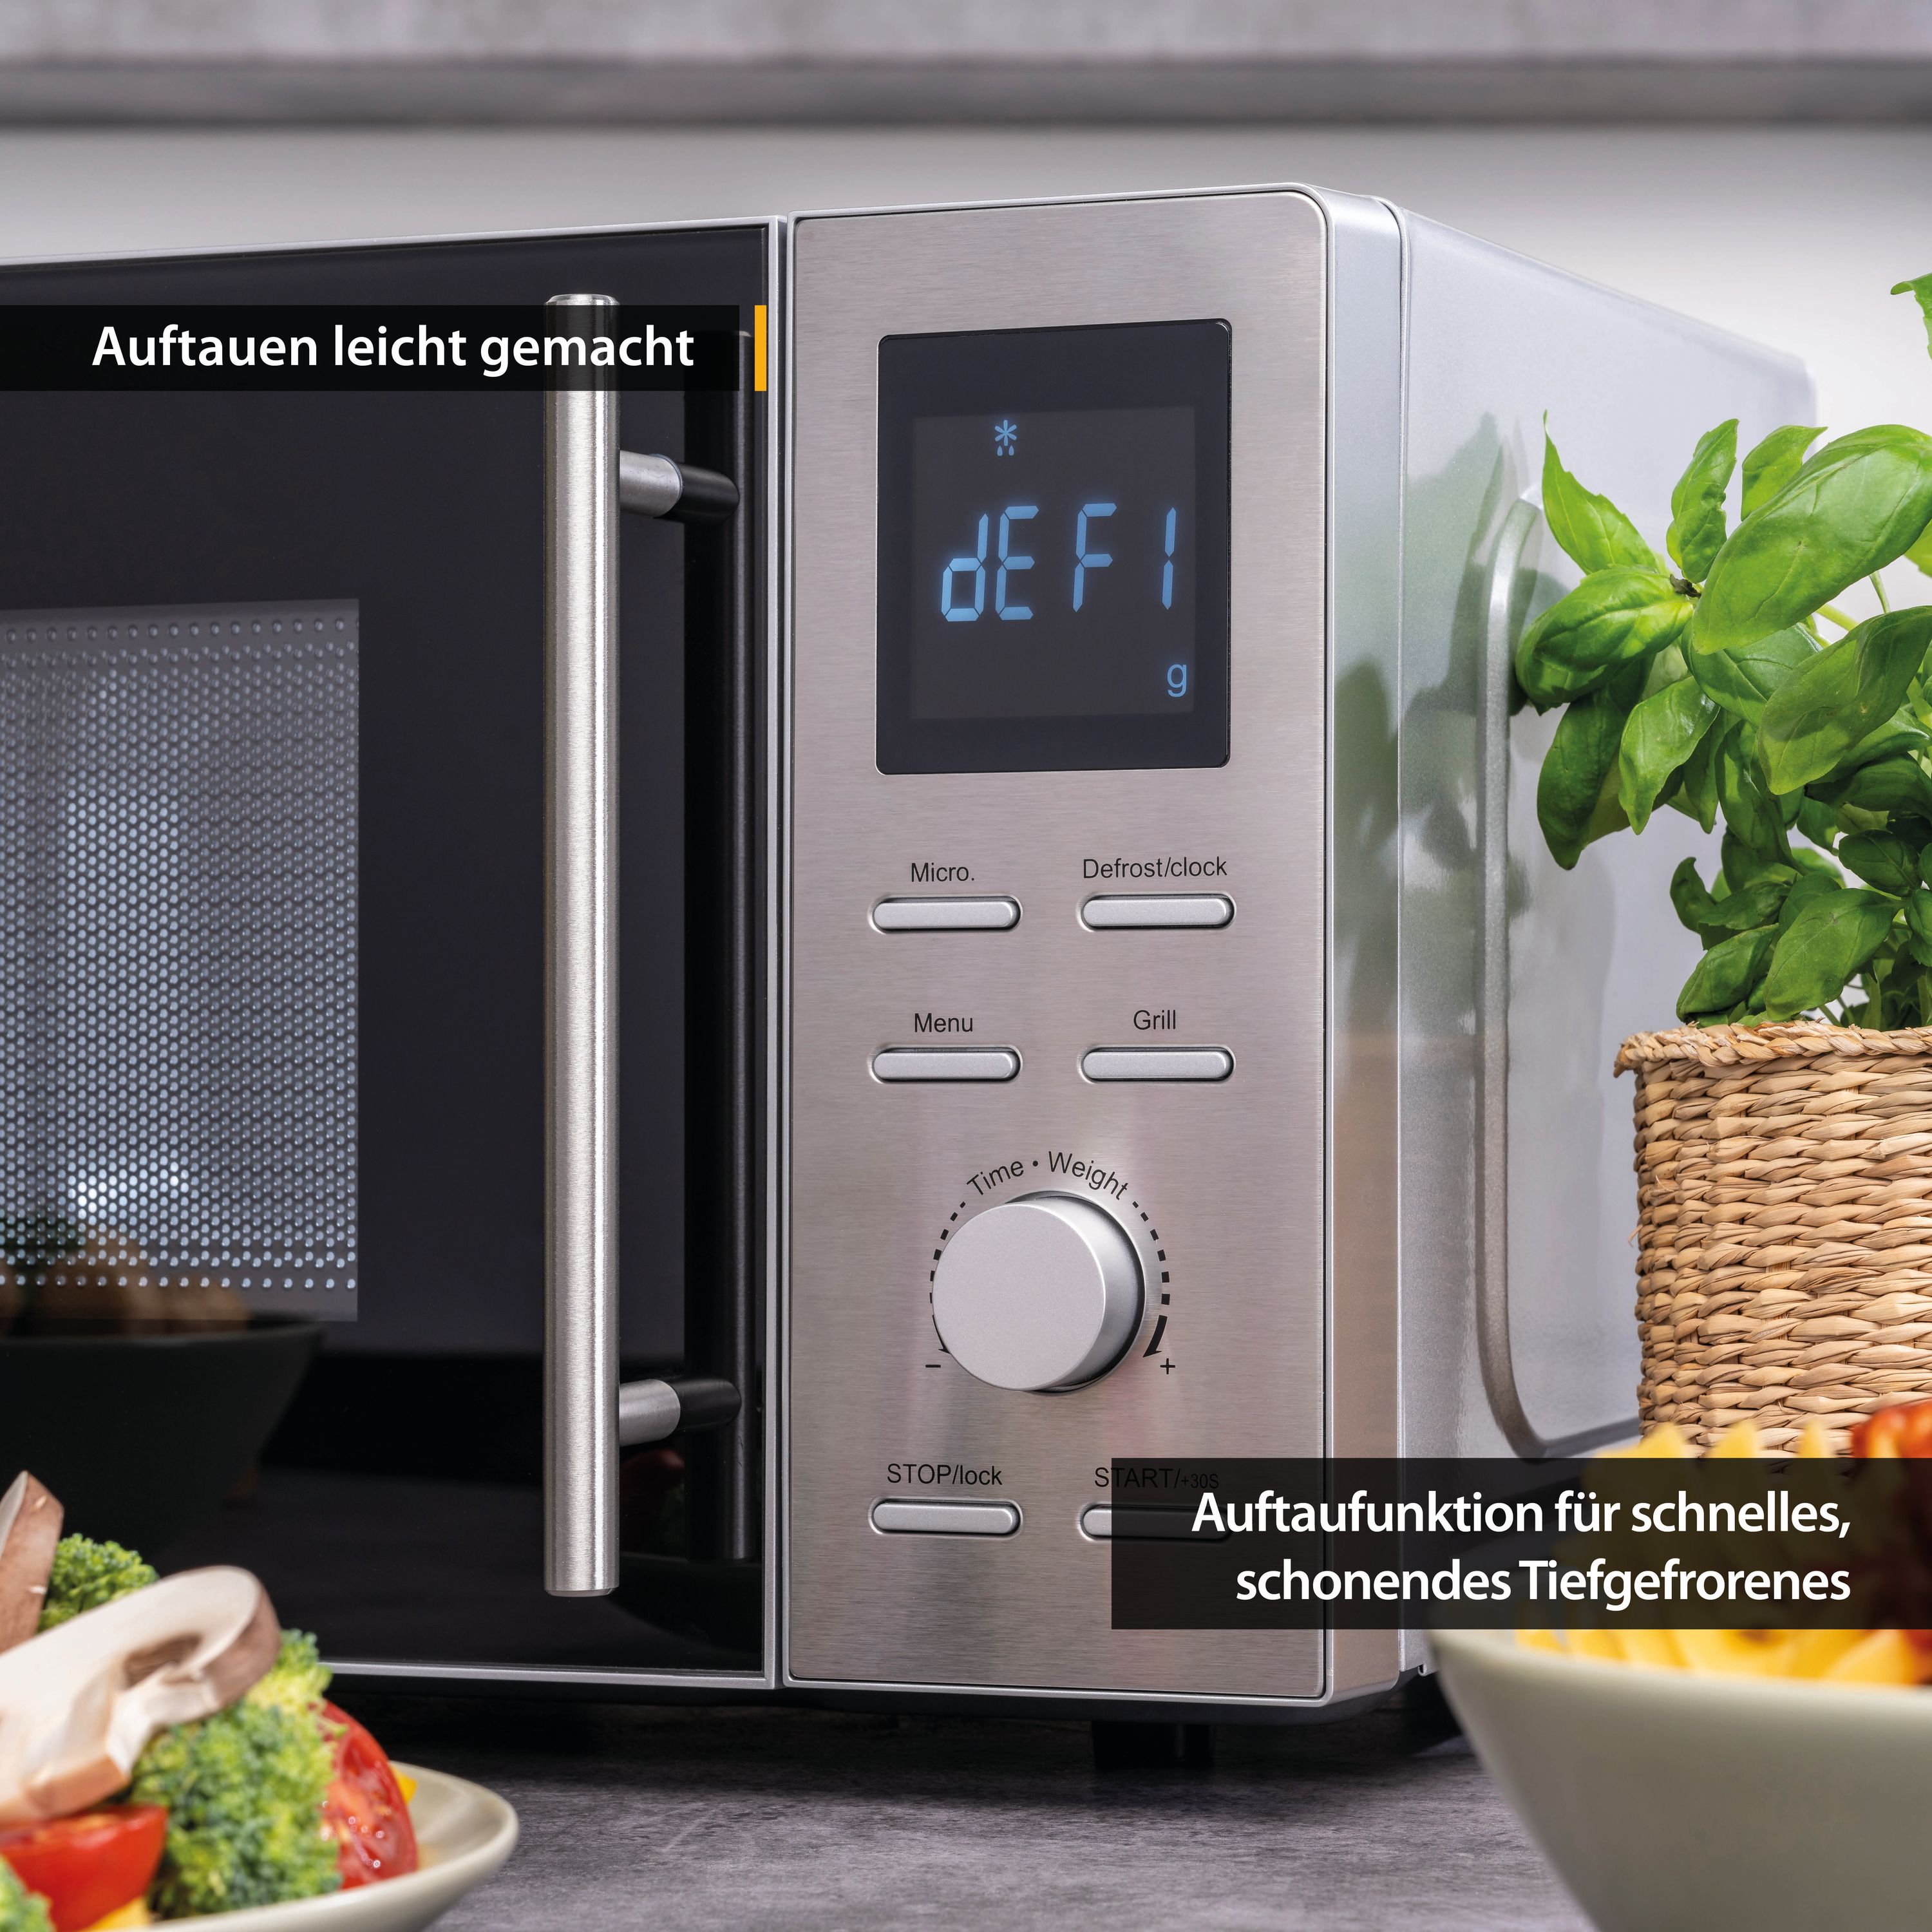 Microwave 20 liters | Digital: 700 watts | Grill: 900 watts